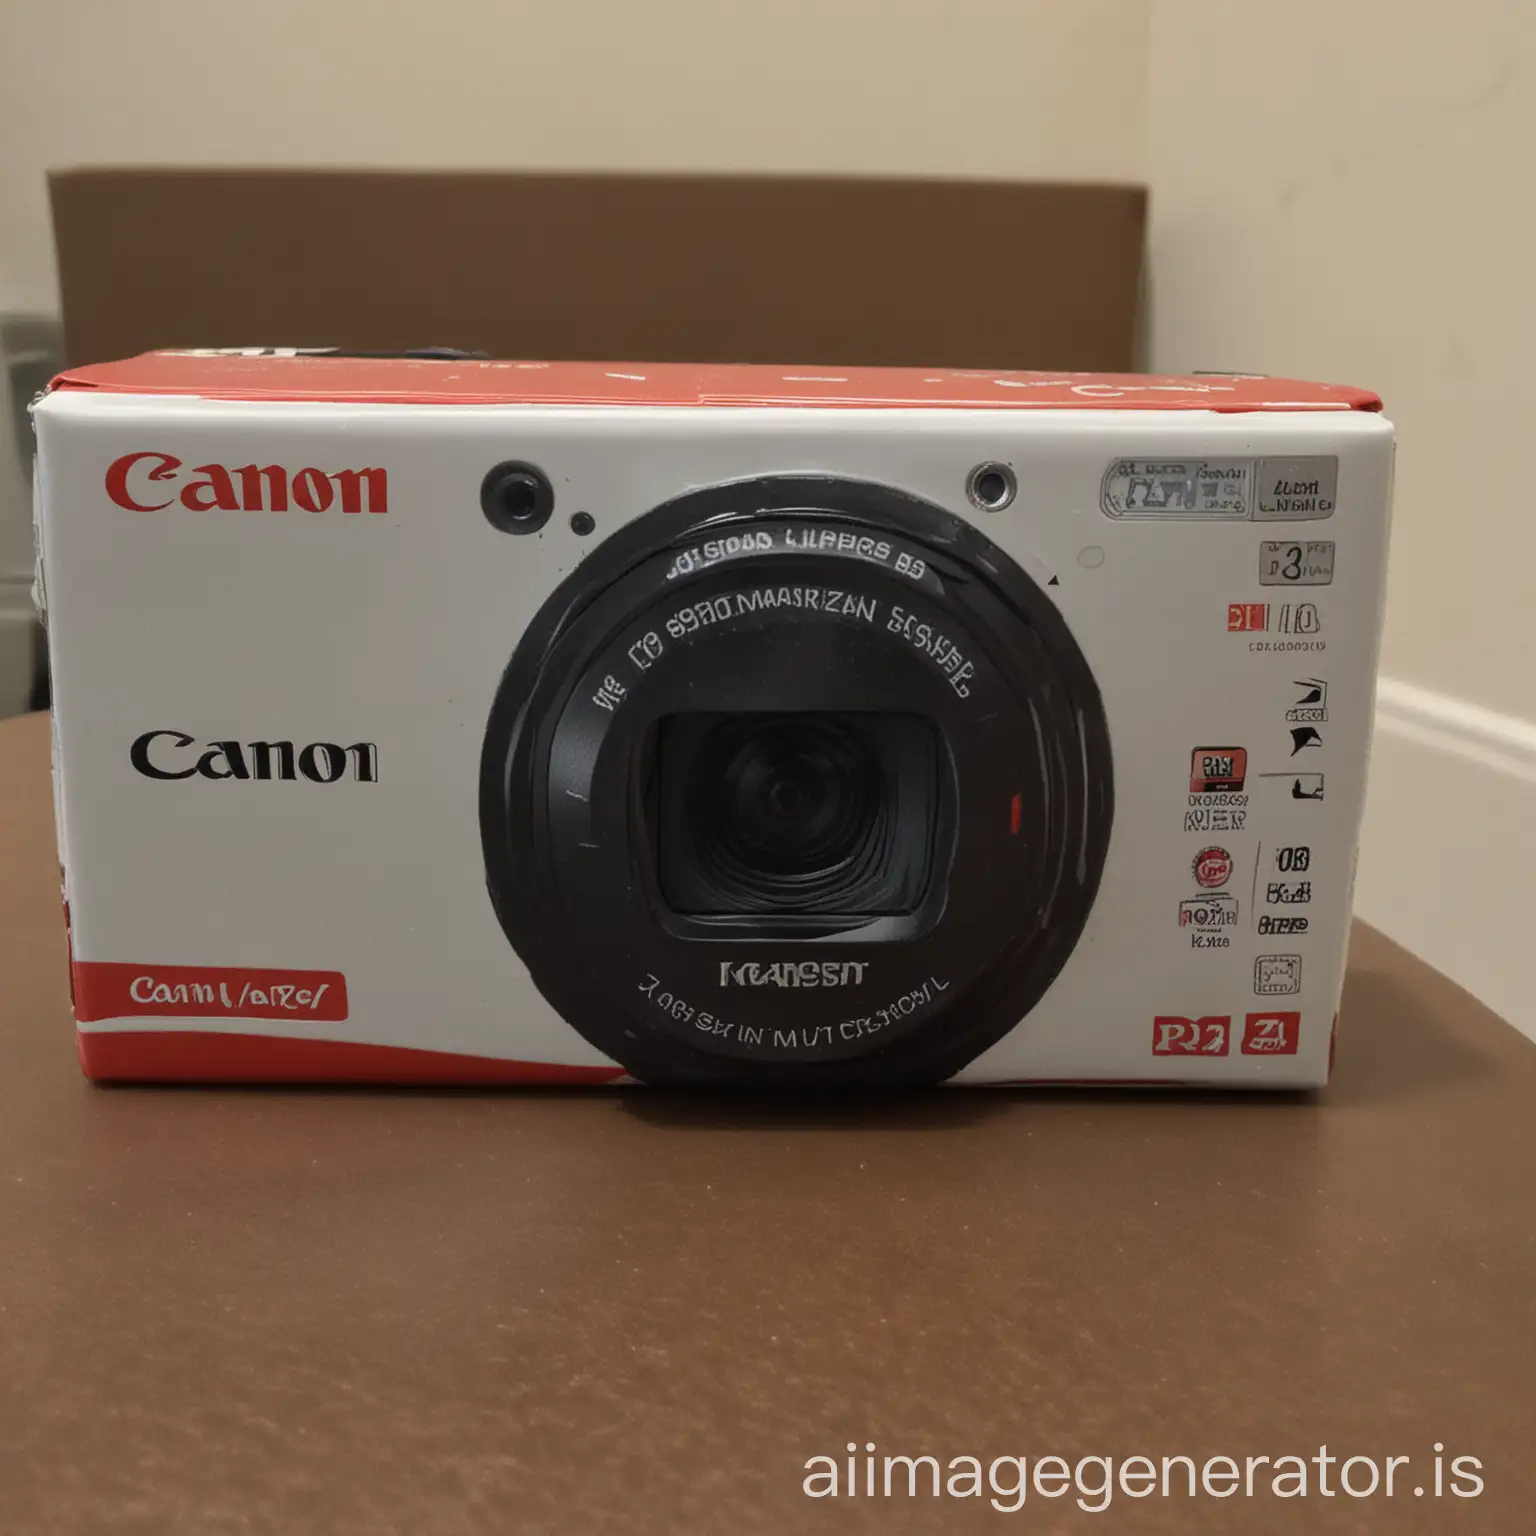 Brand new canon camera